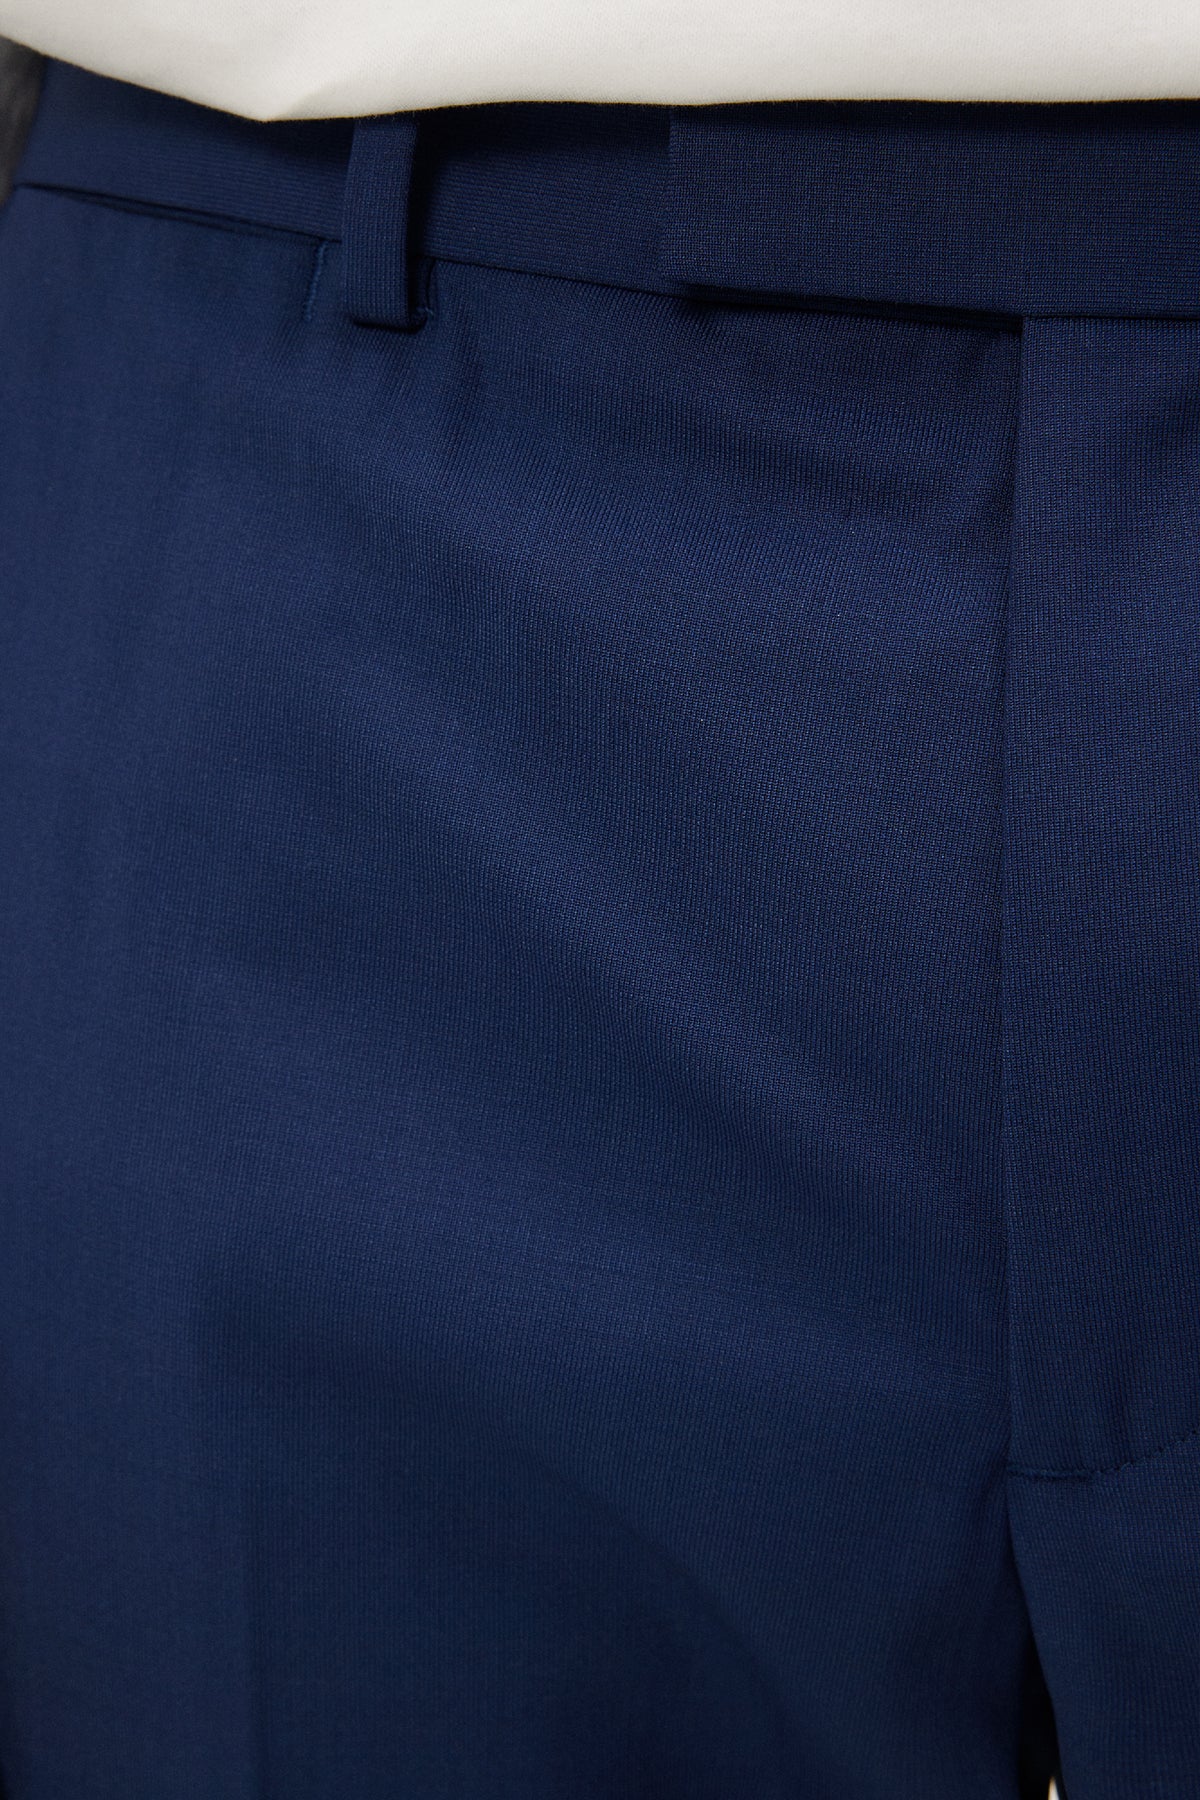 Grant Bi Stretch Pants / Blue Indigo